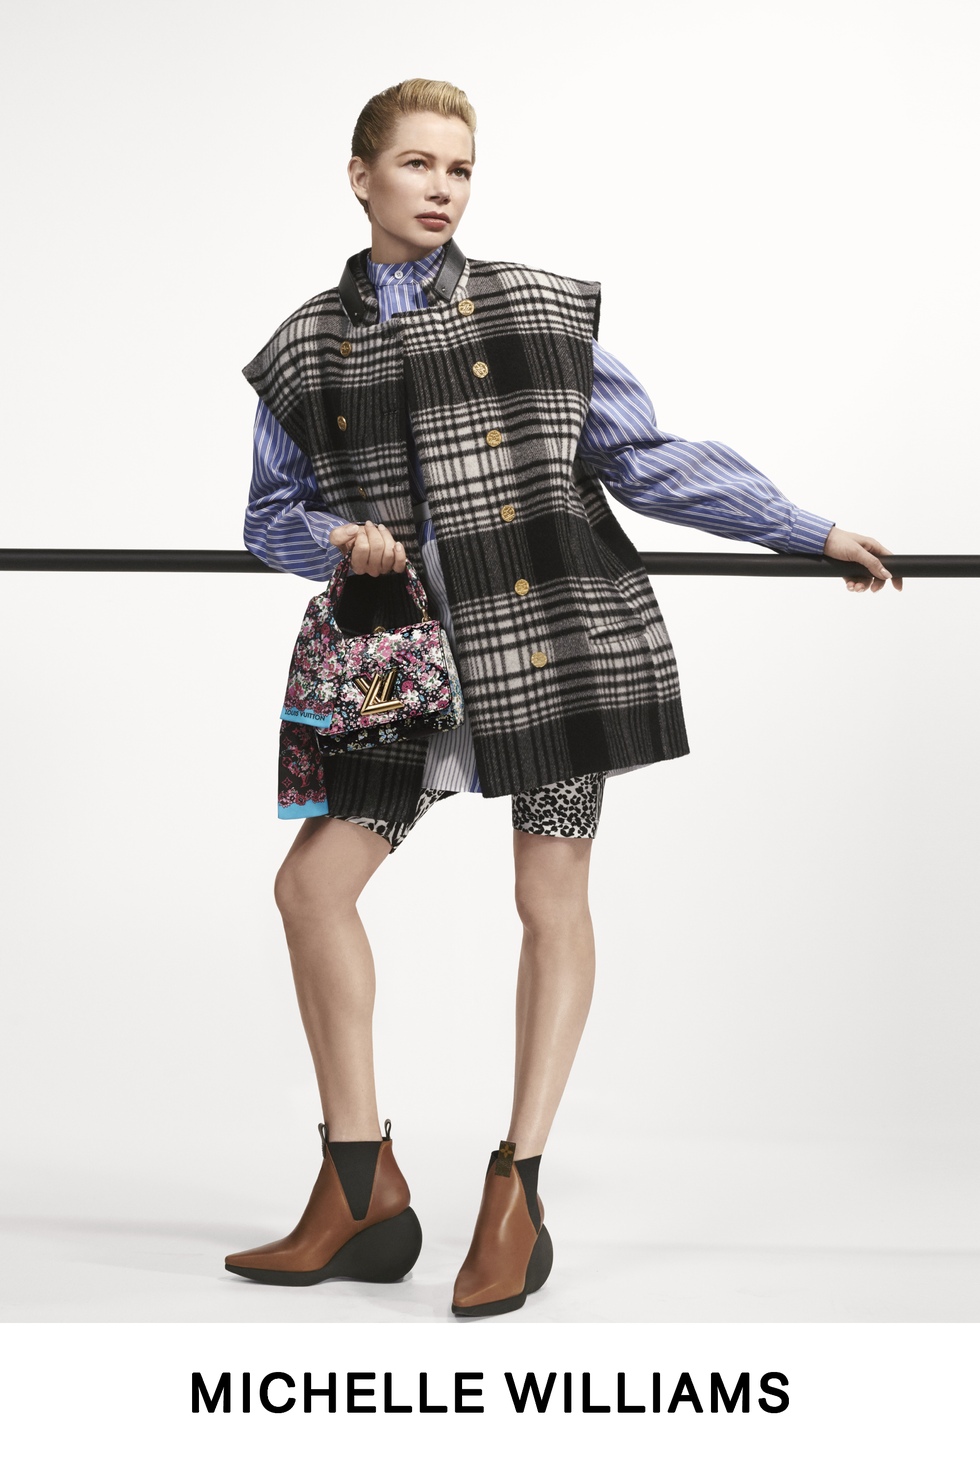 Lea Seydoux for Louis Vuitton Pre-fall 2020